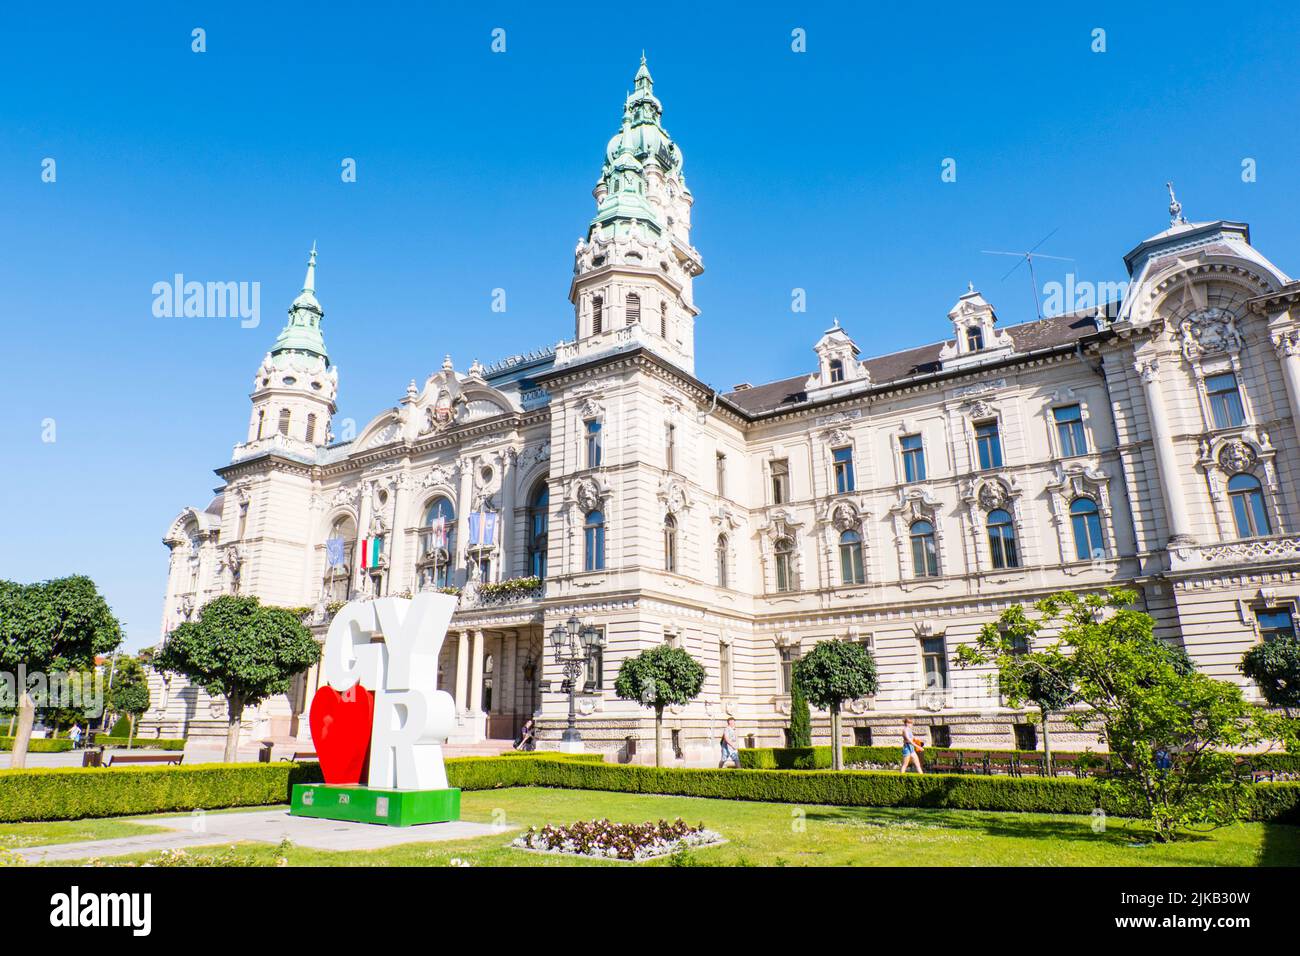 Győri városháza, Varoshaza, town hall, Gyor, Hungary Stock Photo